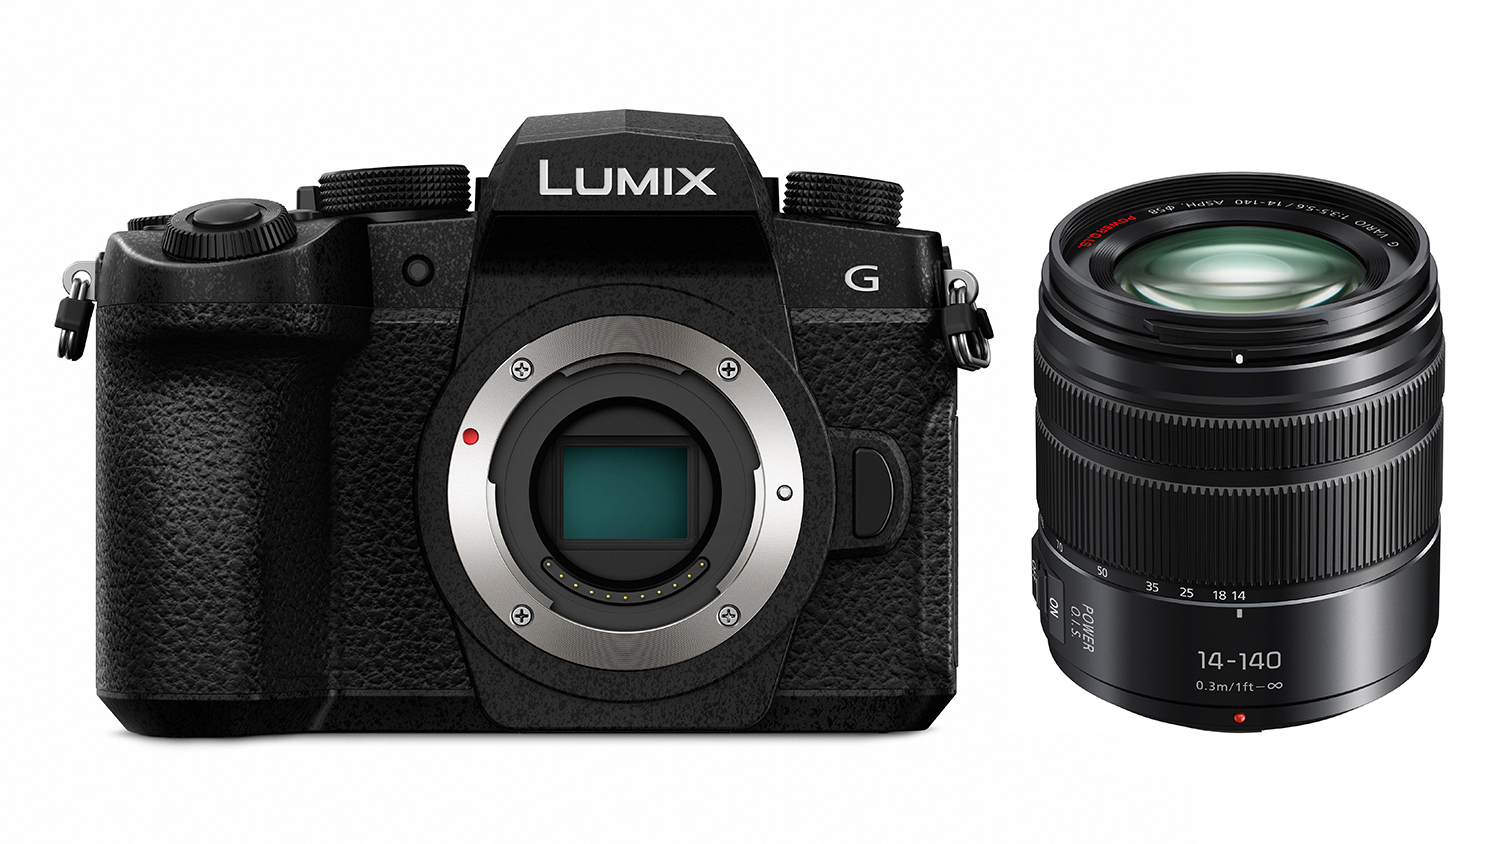 Panasonic Lumix G95 Mirrorless Camera with 14-140mm f/3.5-5.6 Lens